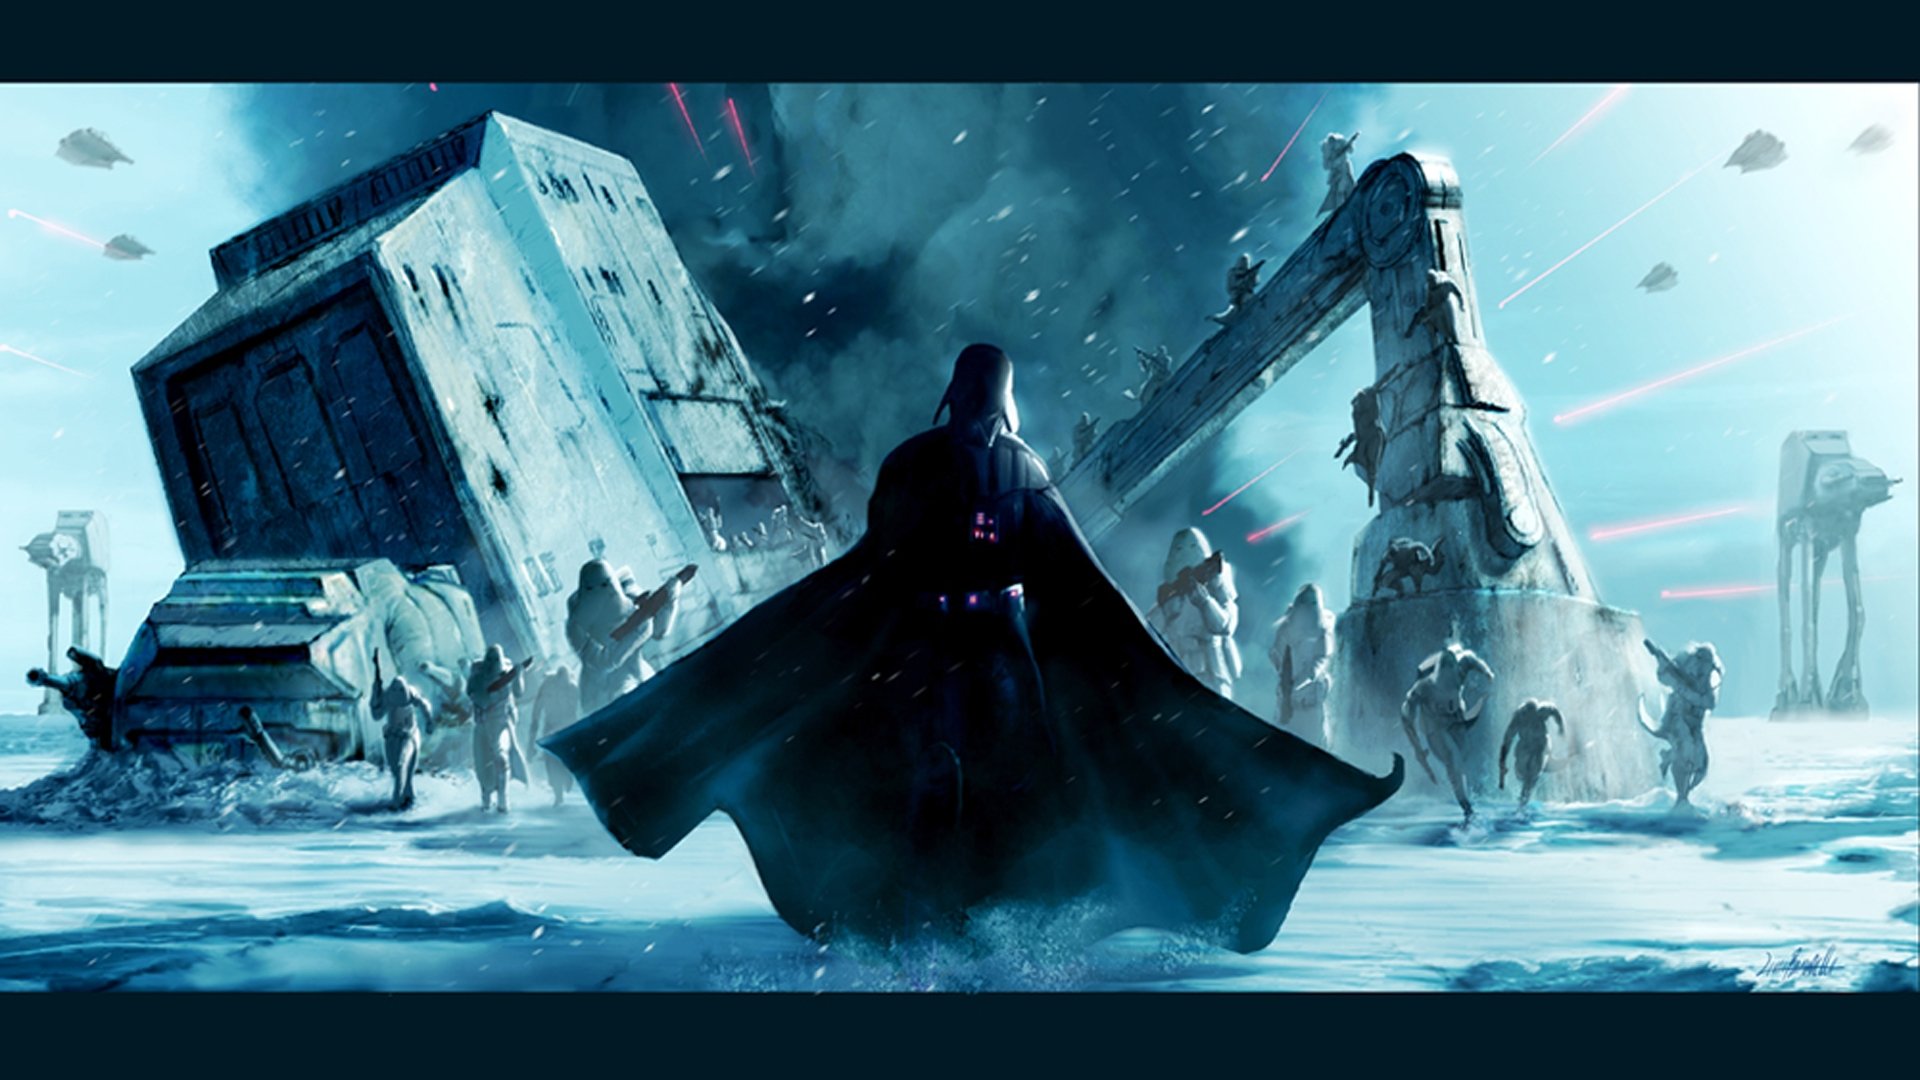 Star Wars   Darth Vader Hoth HD Wallpaper FullHDWpp   Full HD